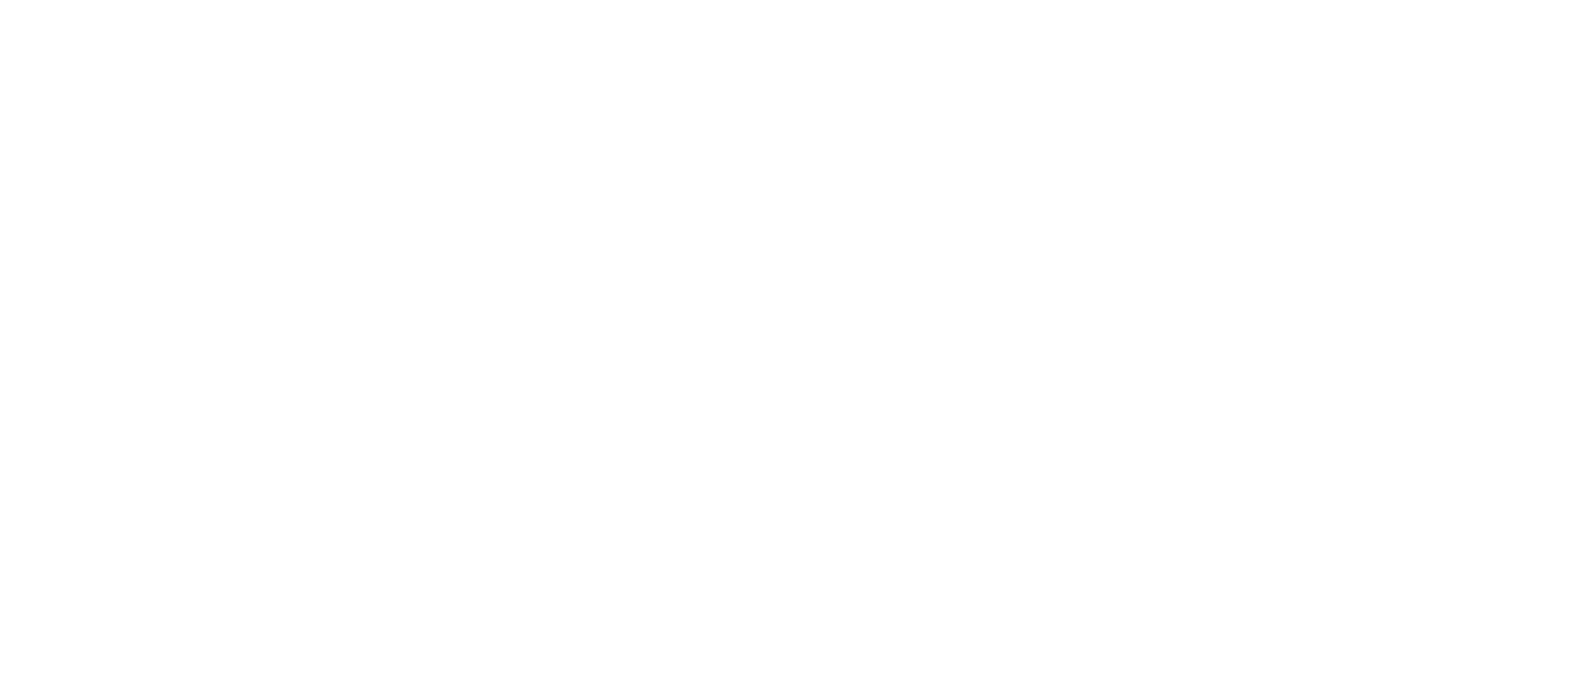 Valeo logo large for dark backgrounds (transparent PNG)